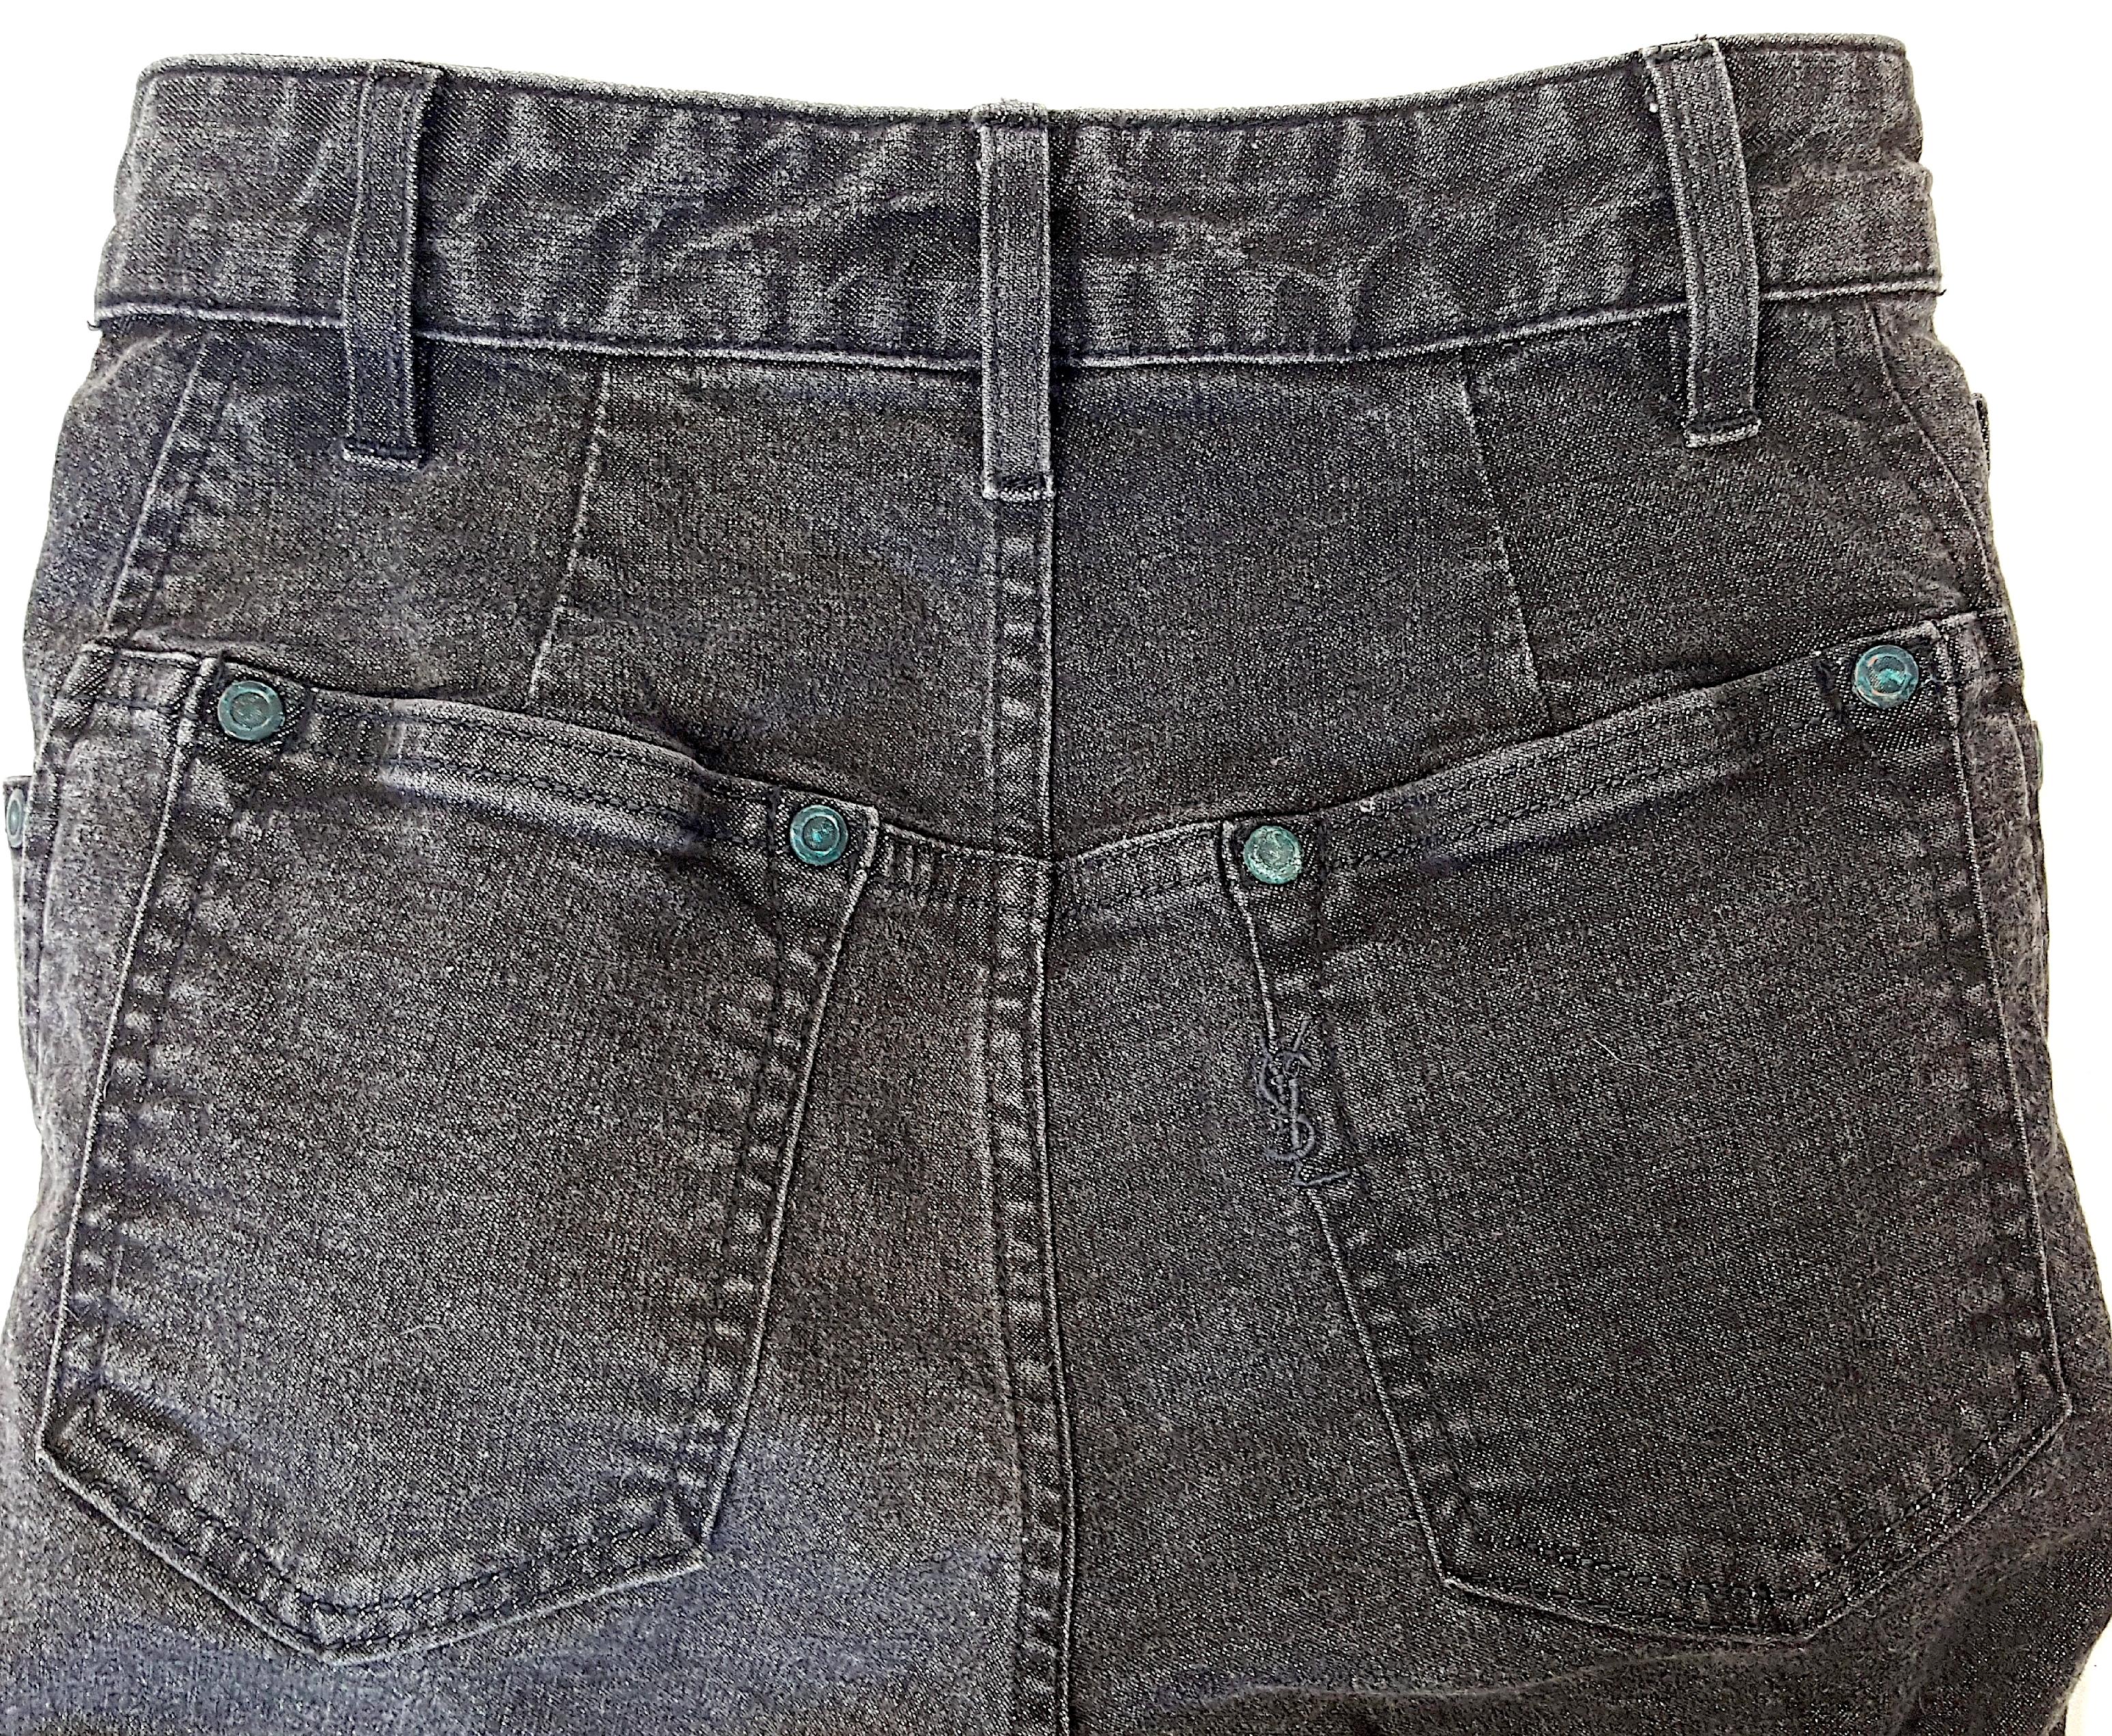 TomFord For YvesSaintLaurent RiveGauche Slim StraightLeg Black FineDenim Jeans For Sale 3